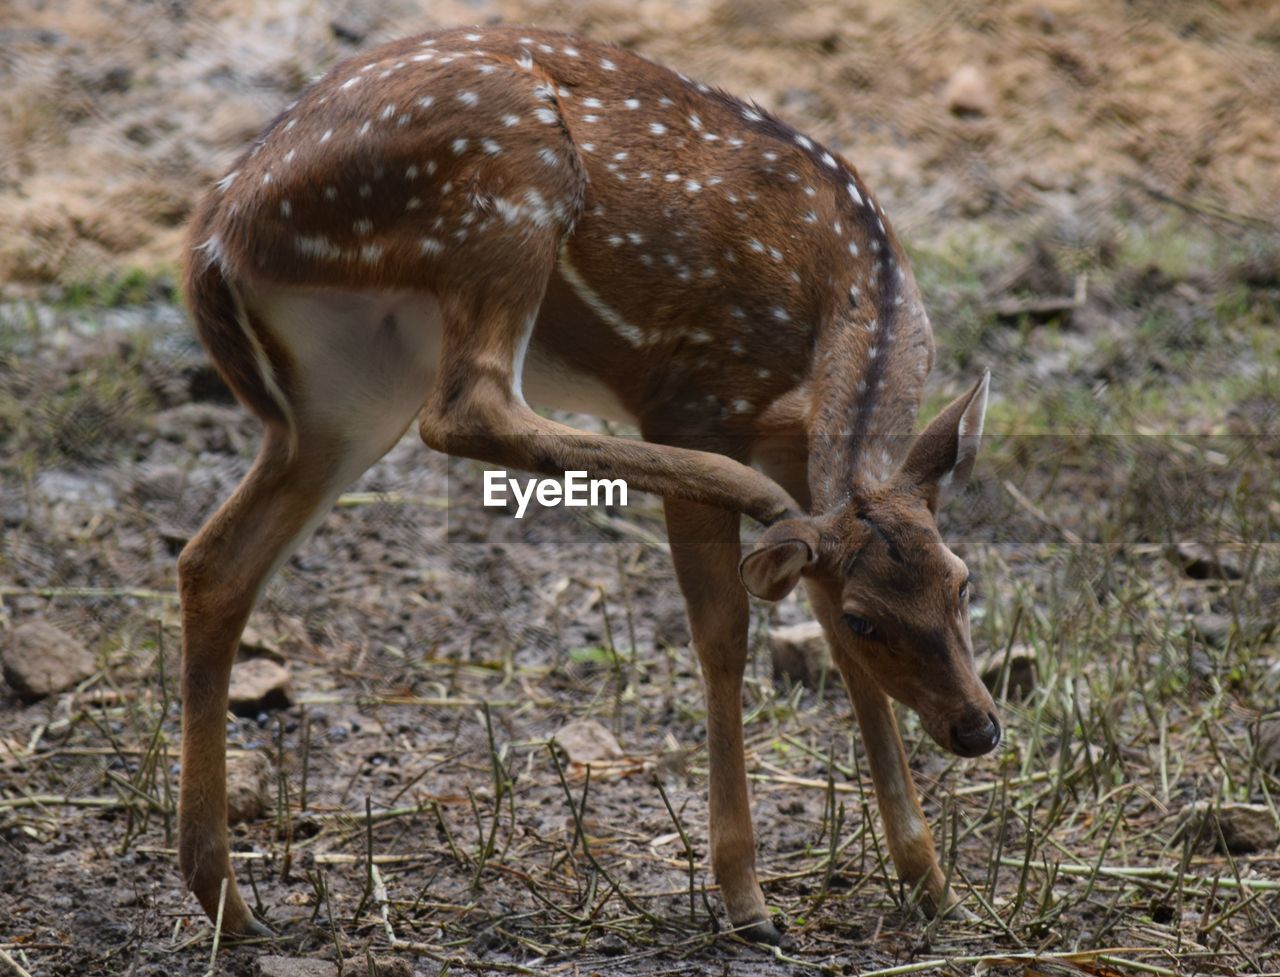 View of axis deer